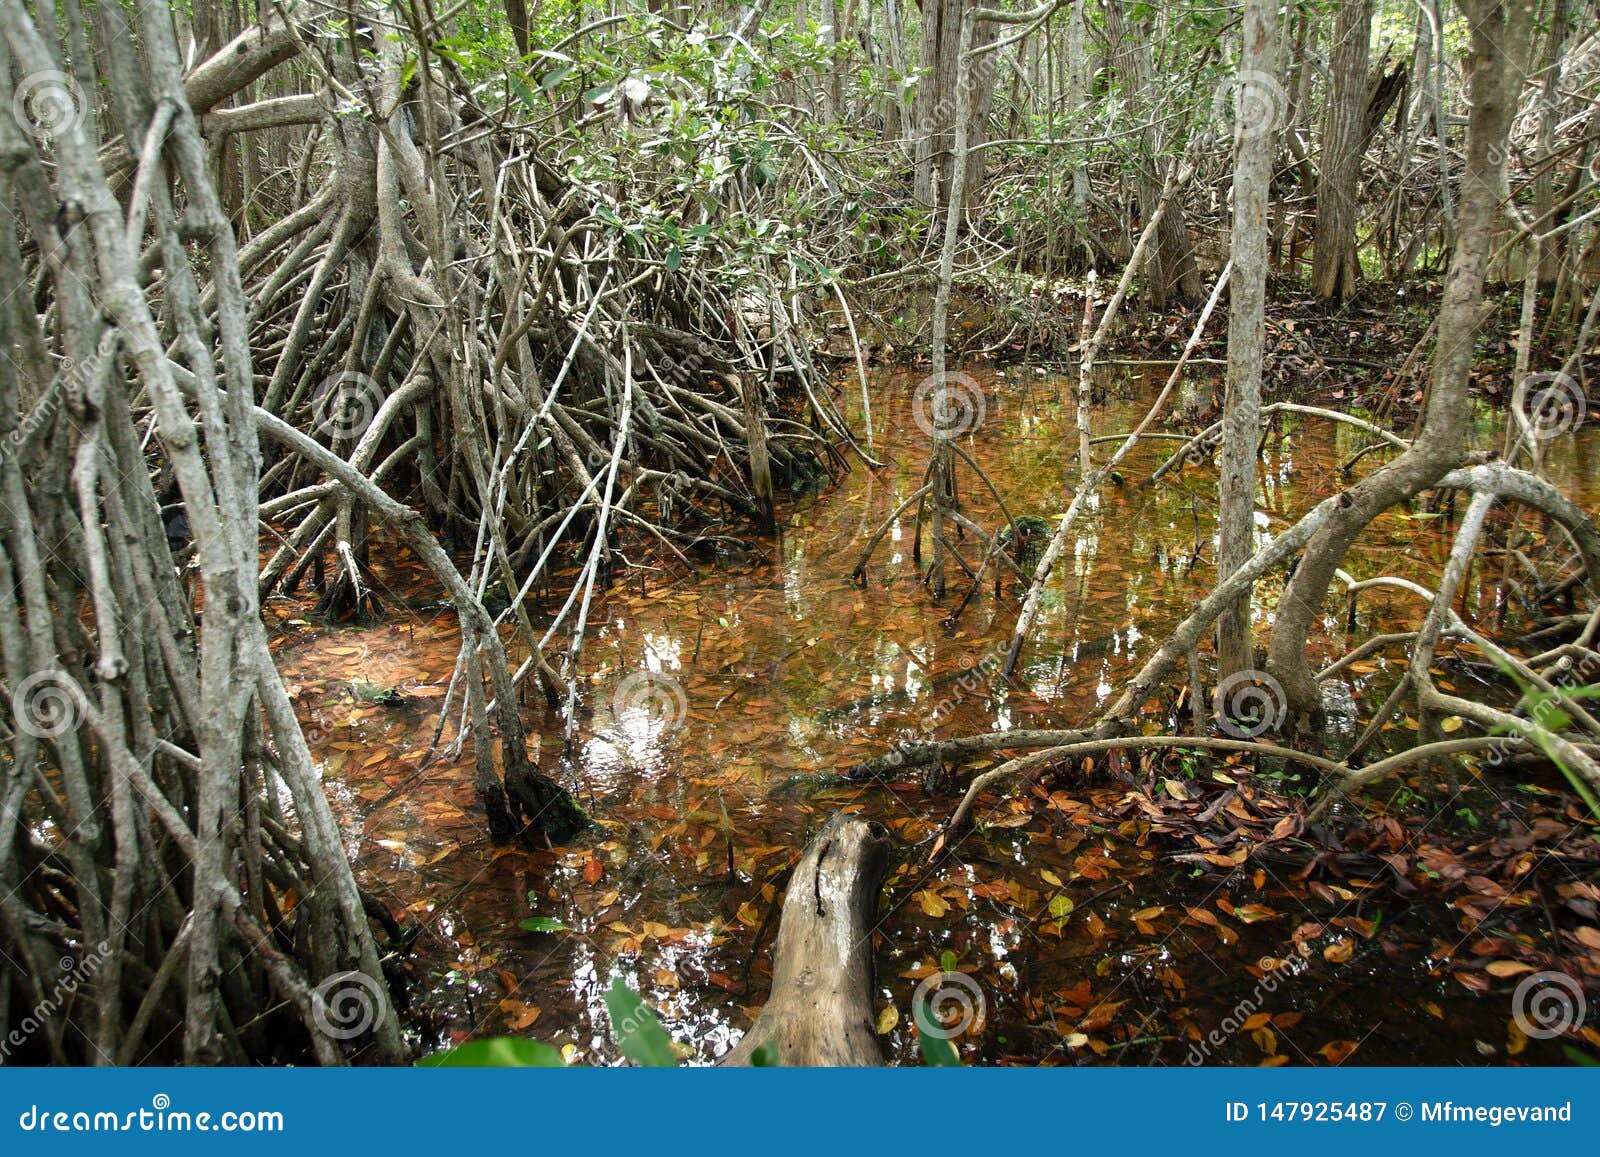 mangroves in progreso